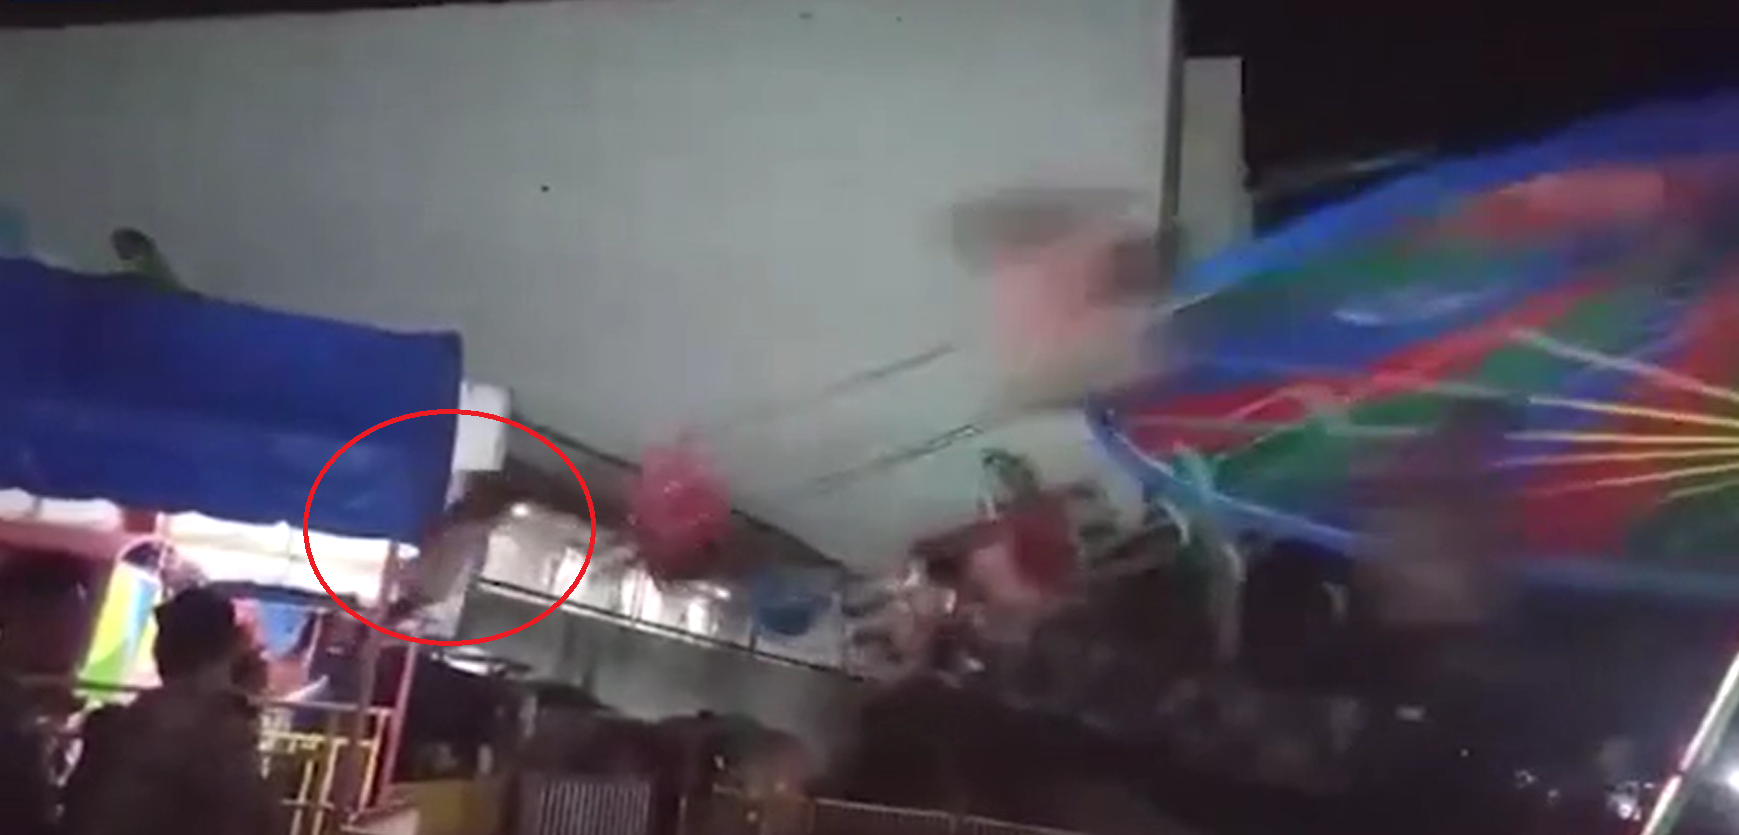 [VÍDEO] [IMÁGENES FUERTES] Niño sale volando de juego mecánico